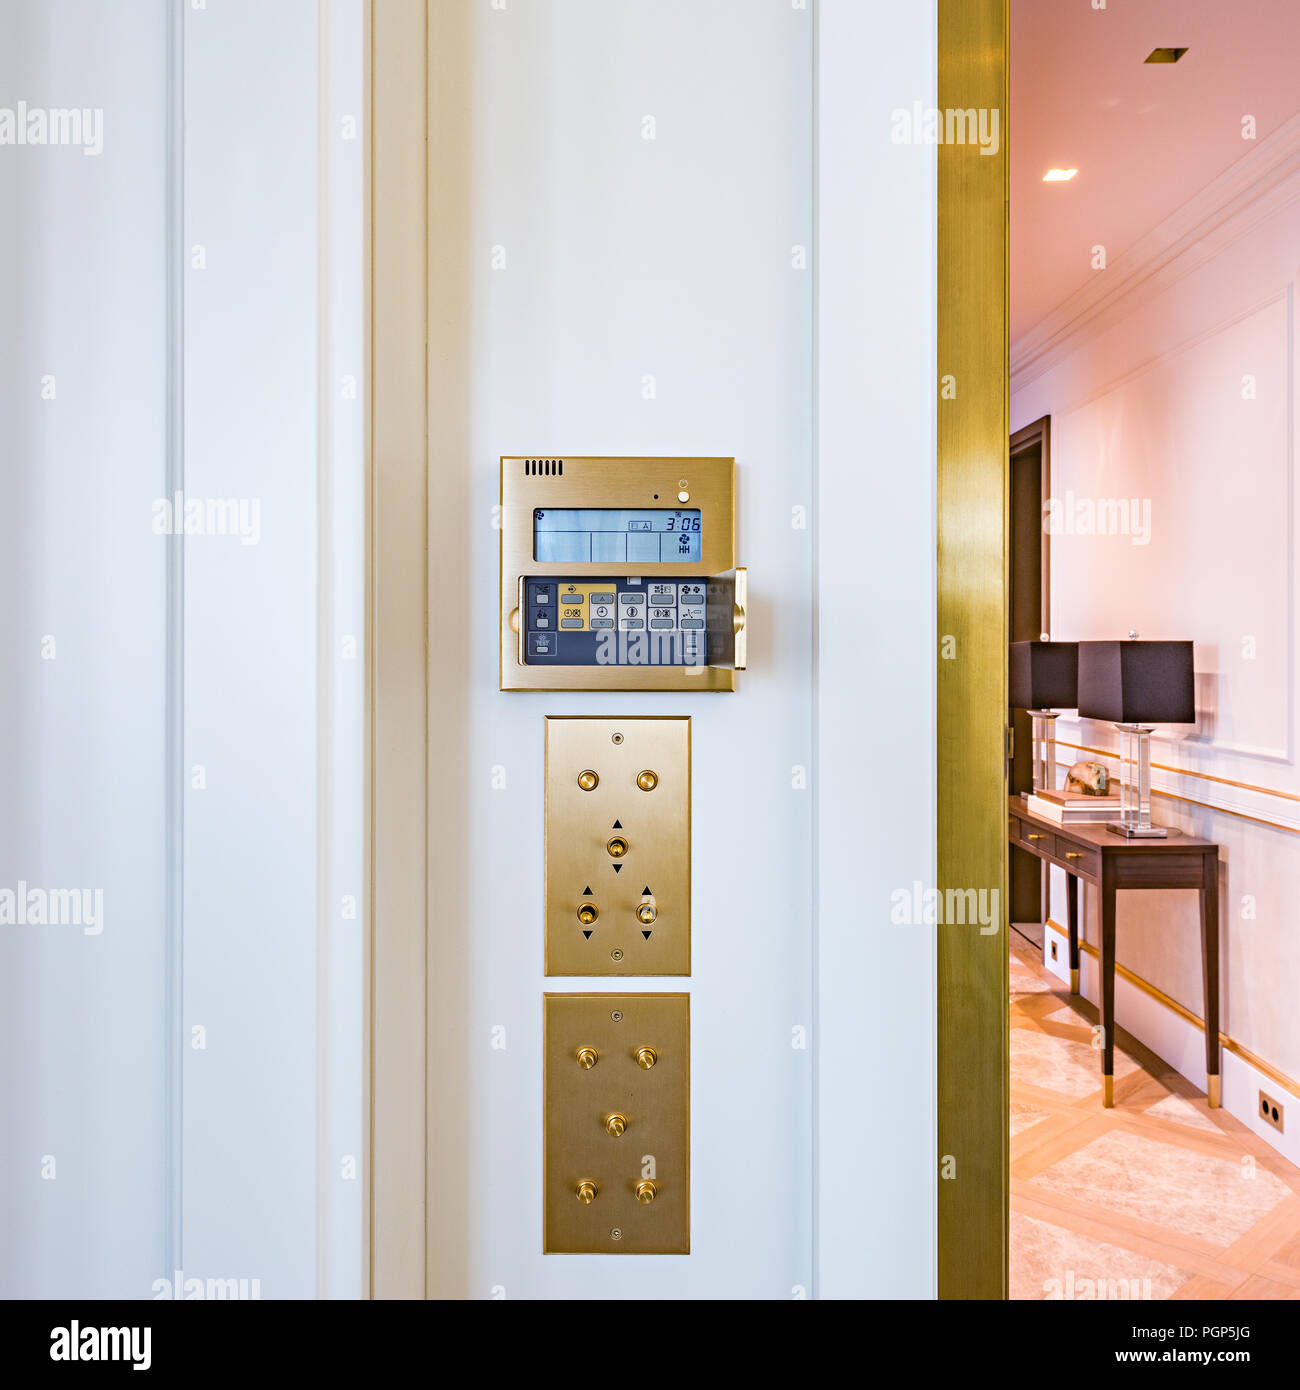 Wall display della temperatura dell'aria all'interno dell'appartamento camera. Foto Stock